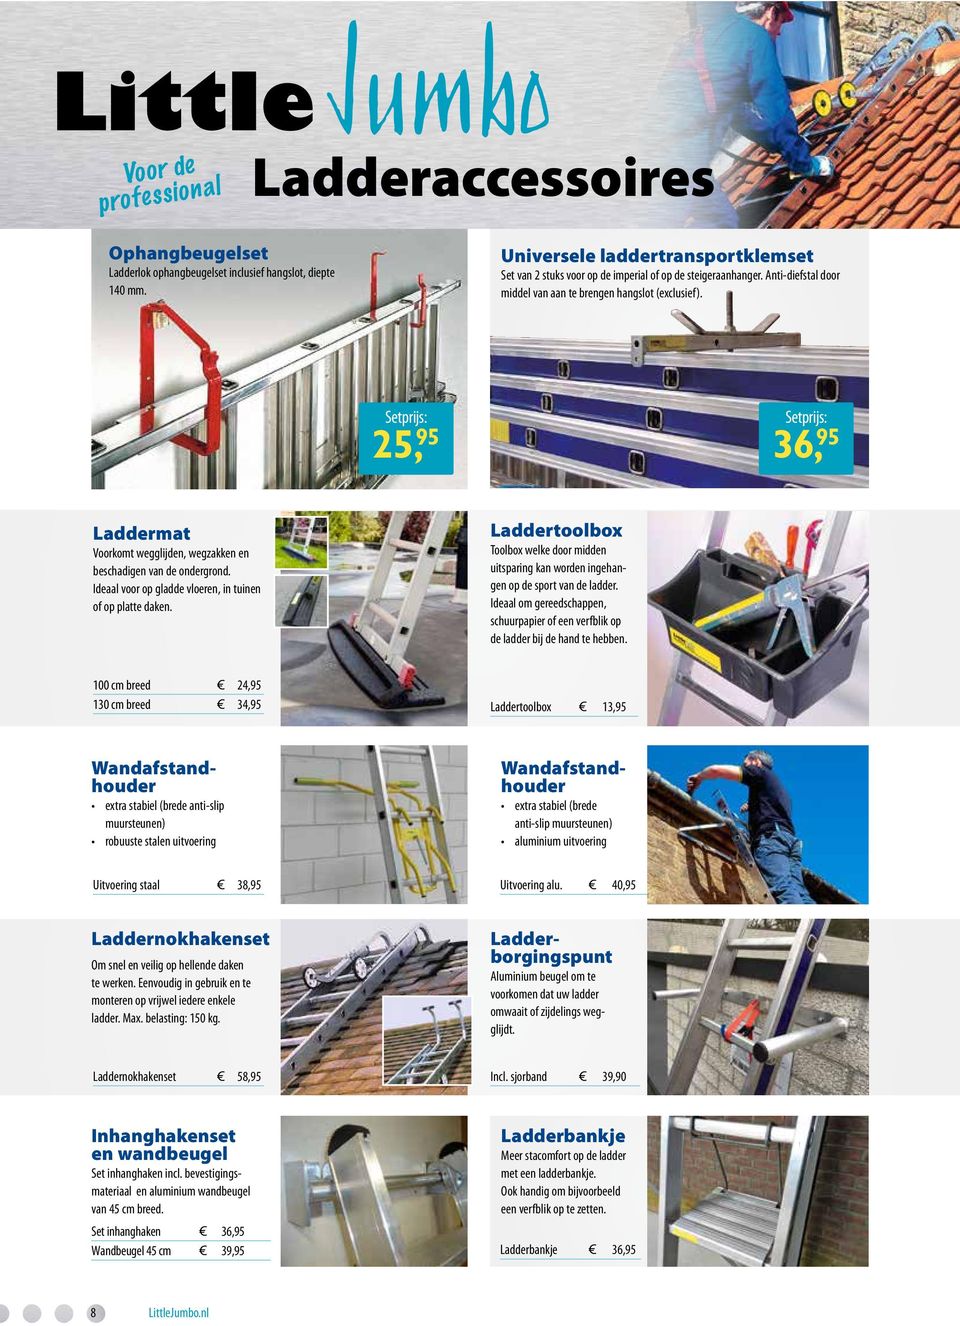 Ideaal voor op gladde vloeren, in tuinen of op platte daken. Laddertoolbox Toolbox welke door midden uitsparing kan worden ingehangen op de sport van de ladder.